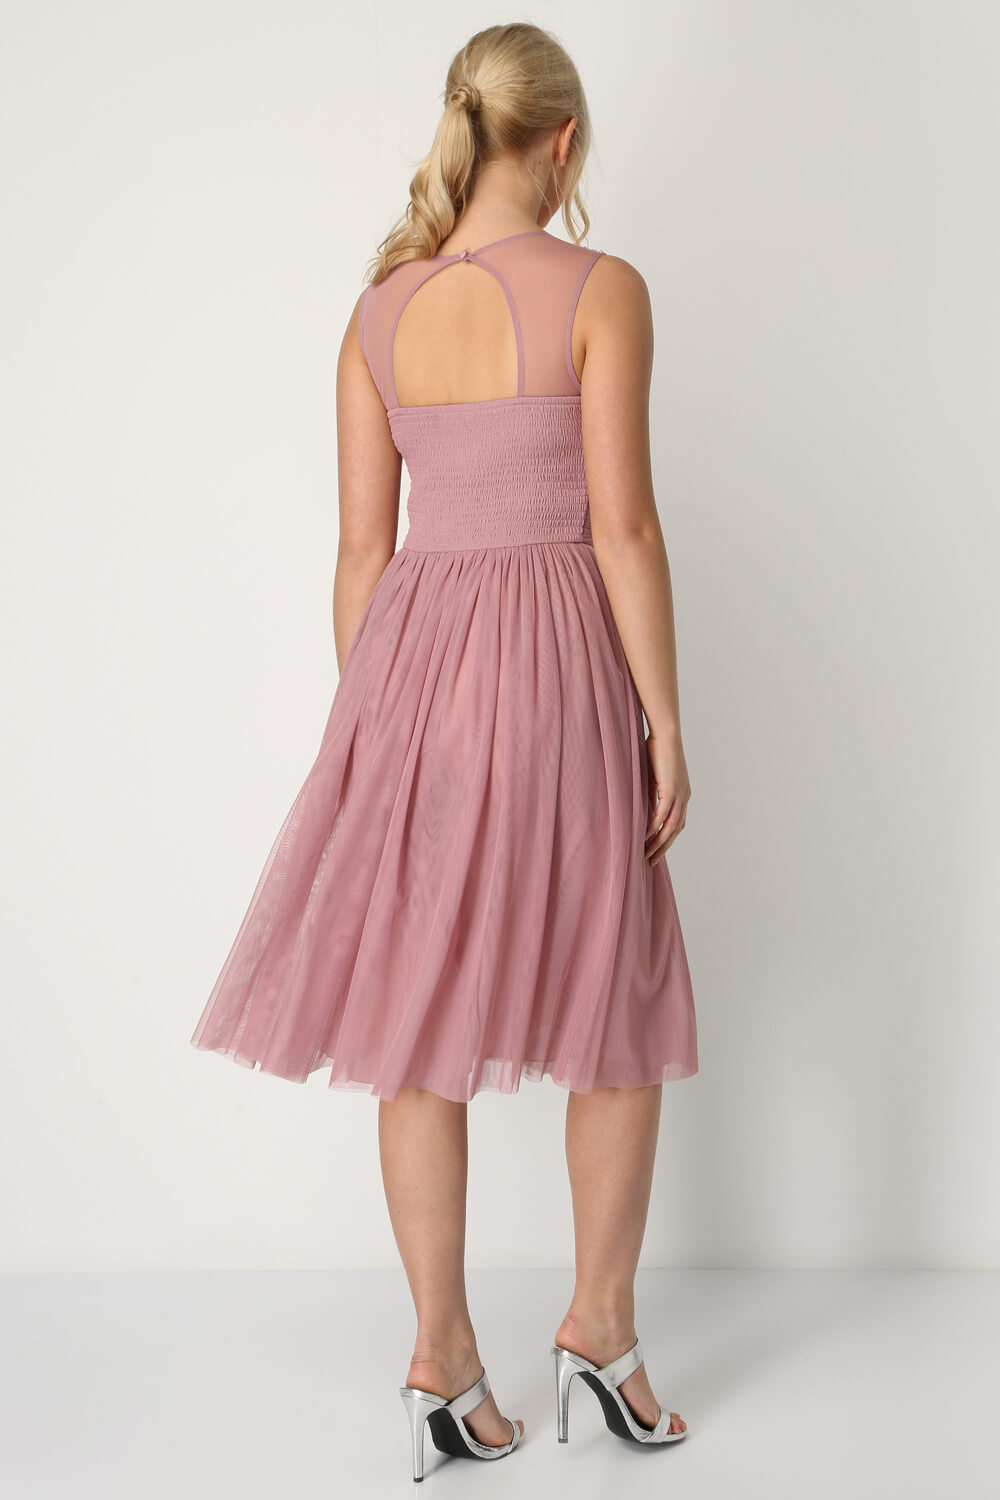 Rose Bead Embellished Knee Length Dress, Image 2 of 5